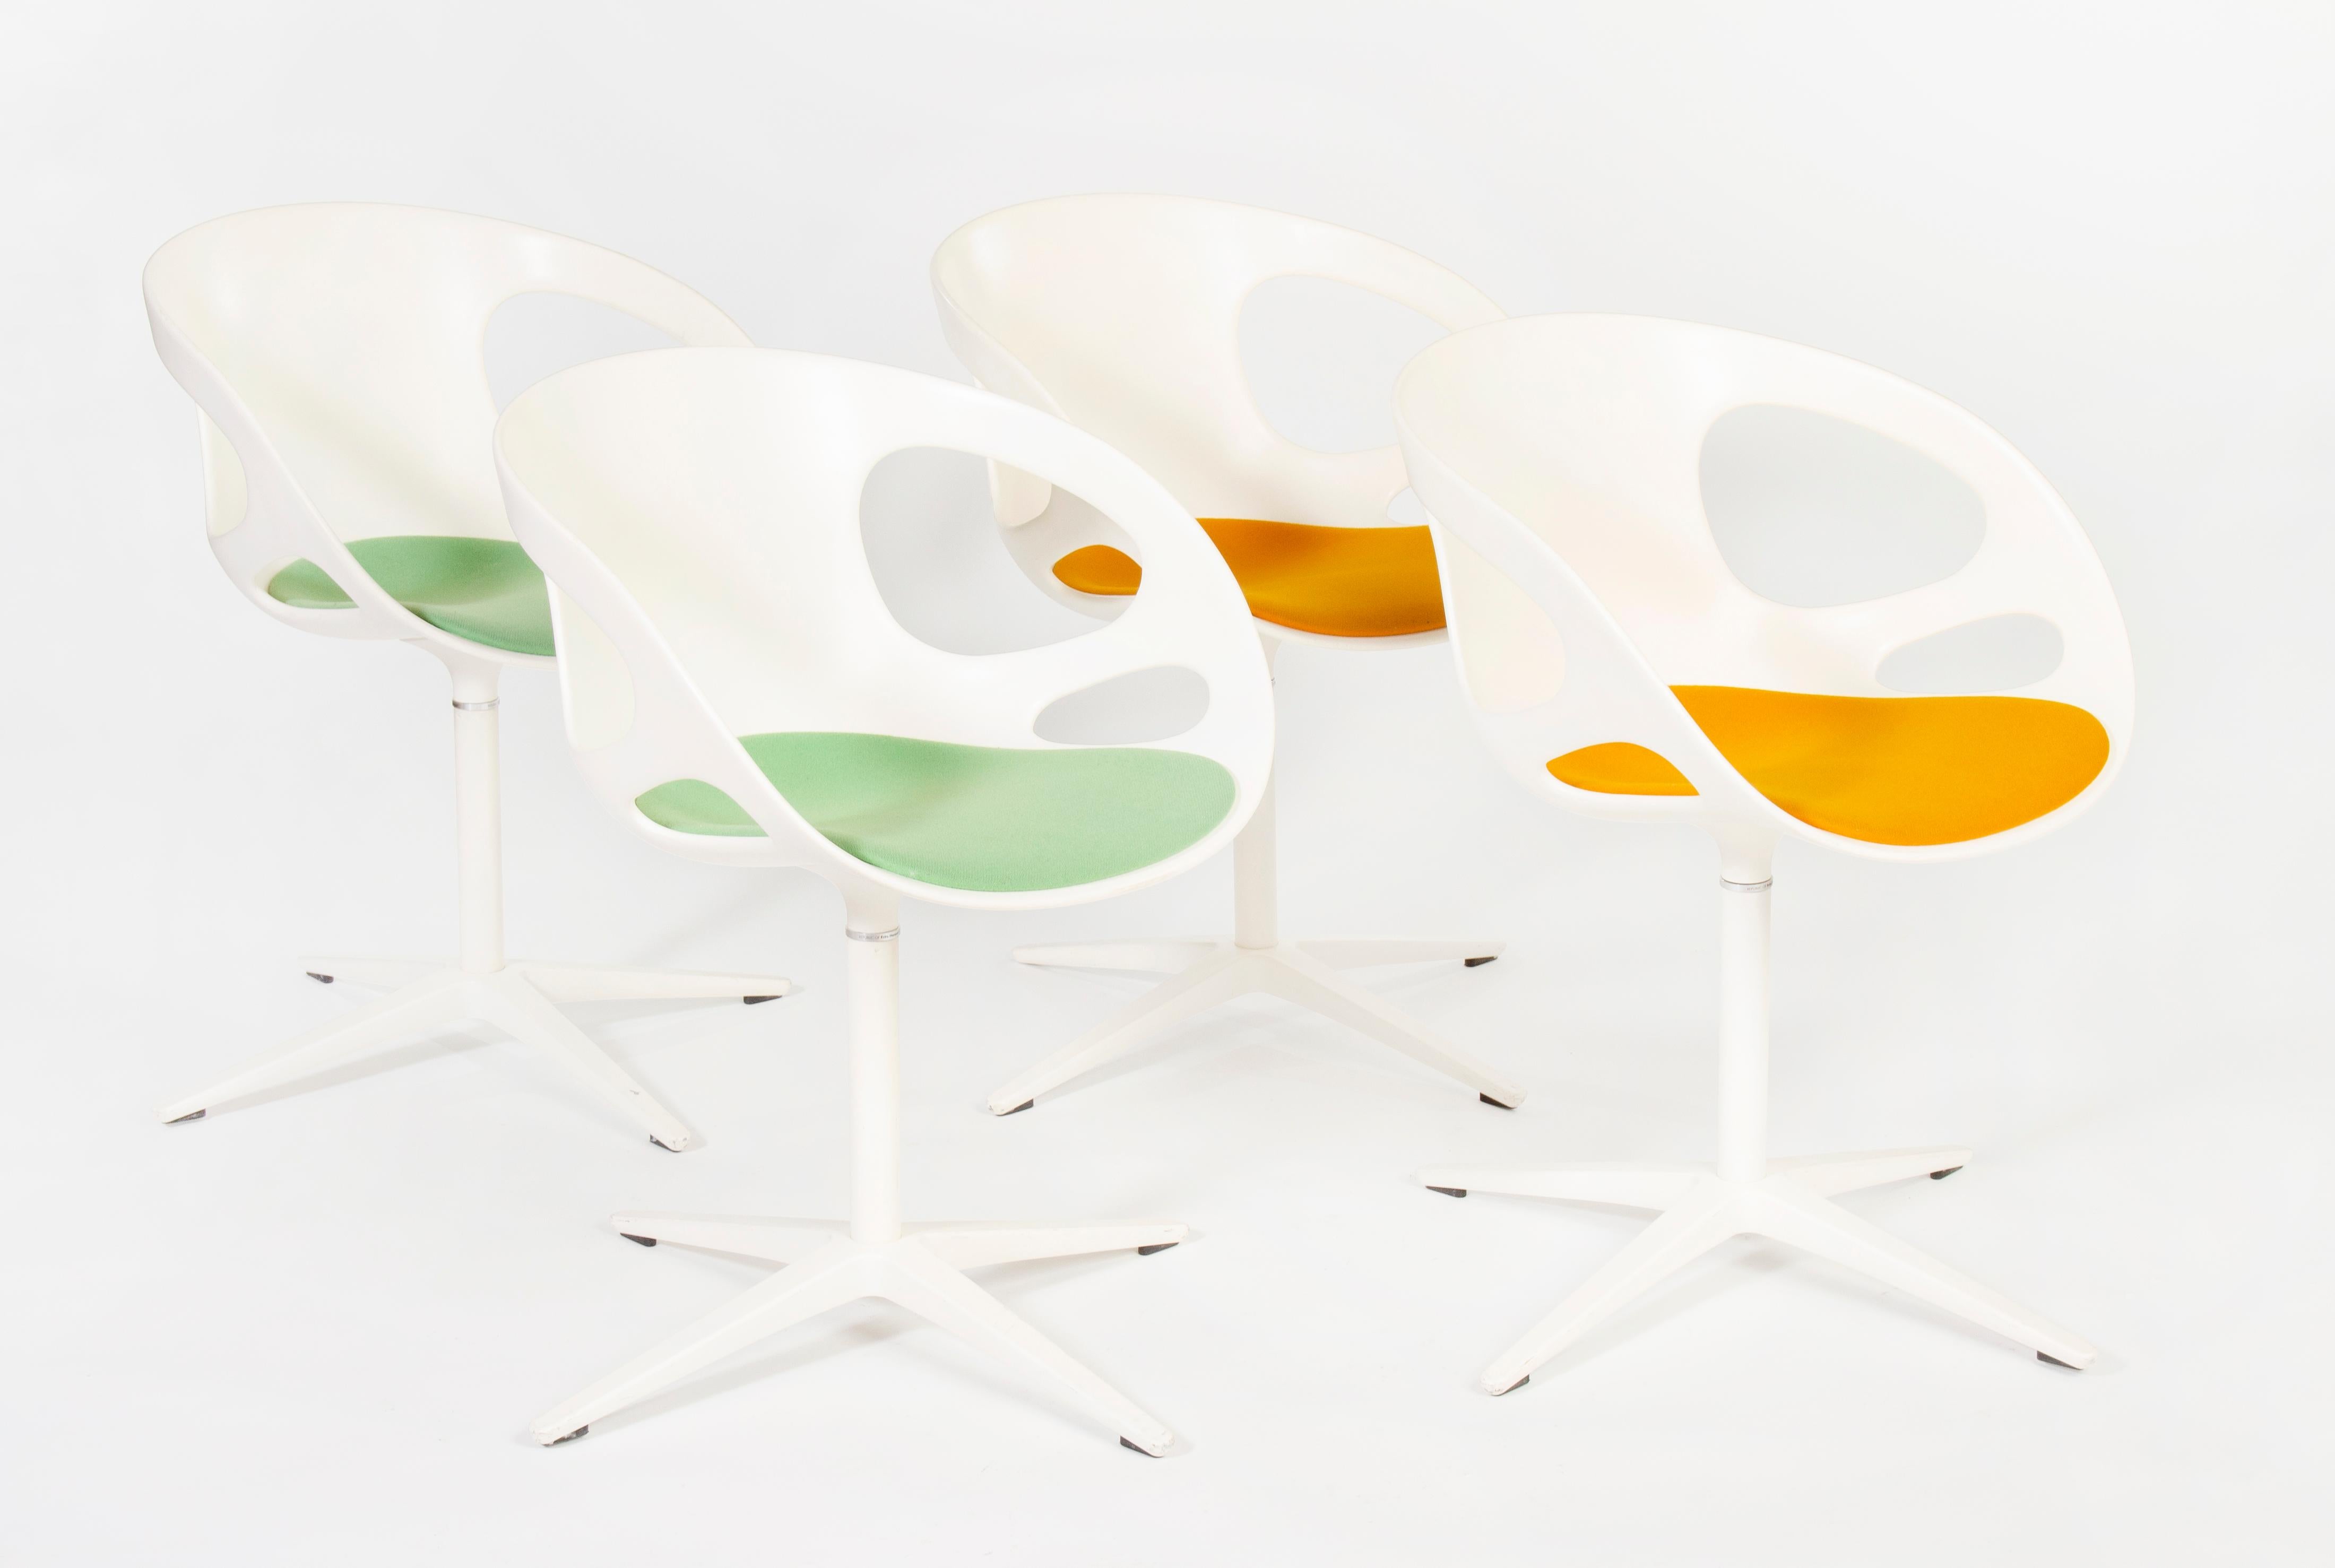 Ensemble de chaises pivotantes pour salle à manger Rin fabriqué par le danois Fritz Hansen, en collaboration avec le designer japonais Hiromichi Konno.
La Nature s'inspire des formes idéales naturelles des nids d'oiseaux.
Avec leurs silhouettes